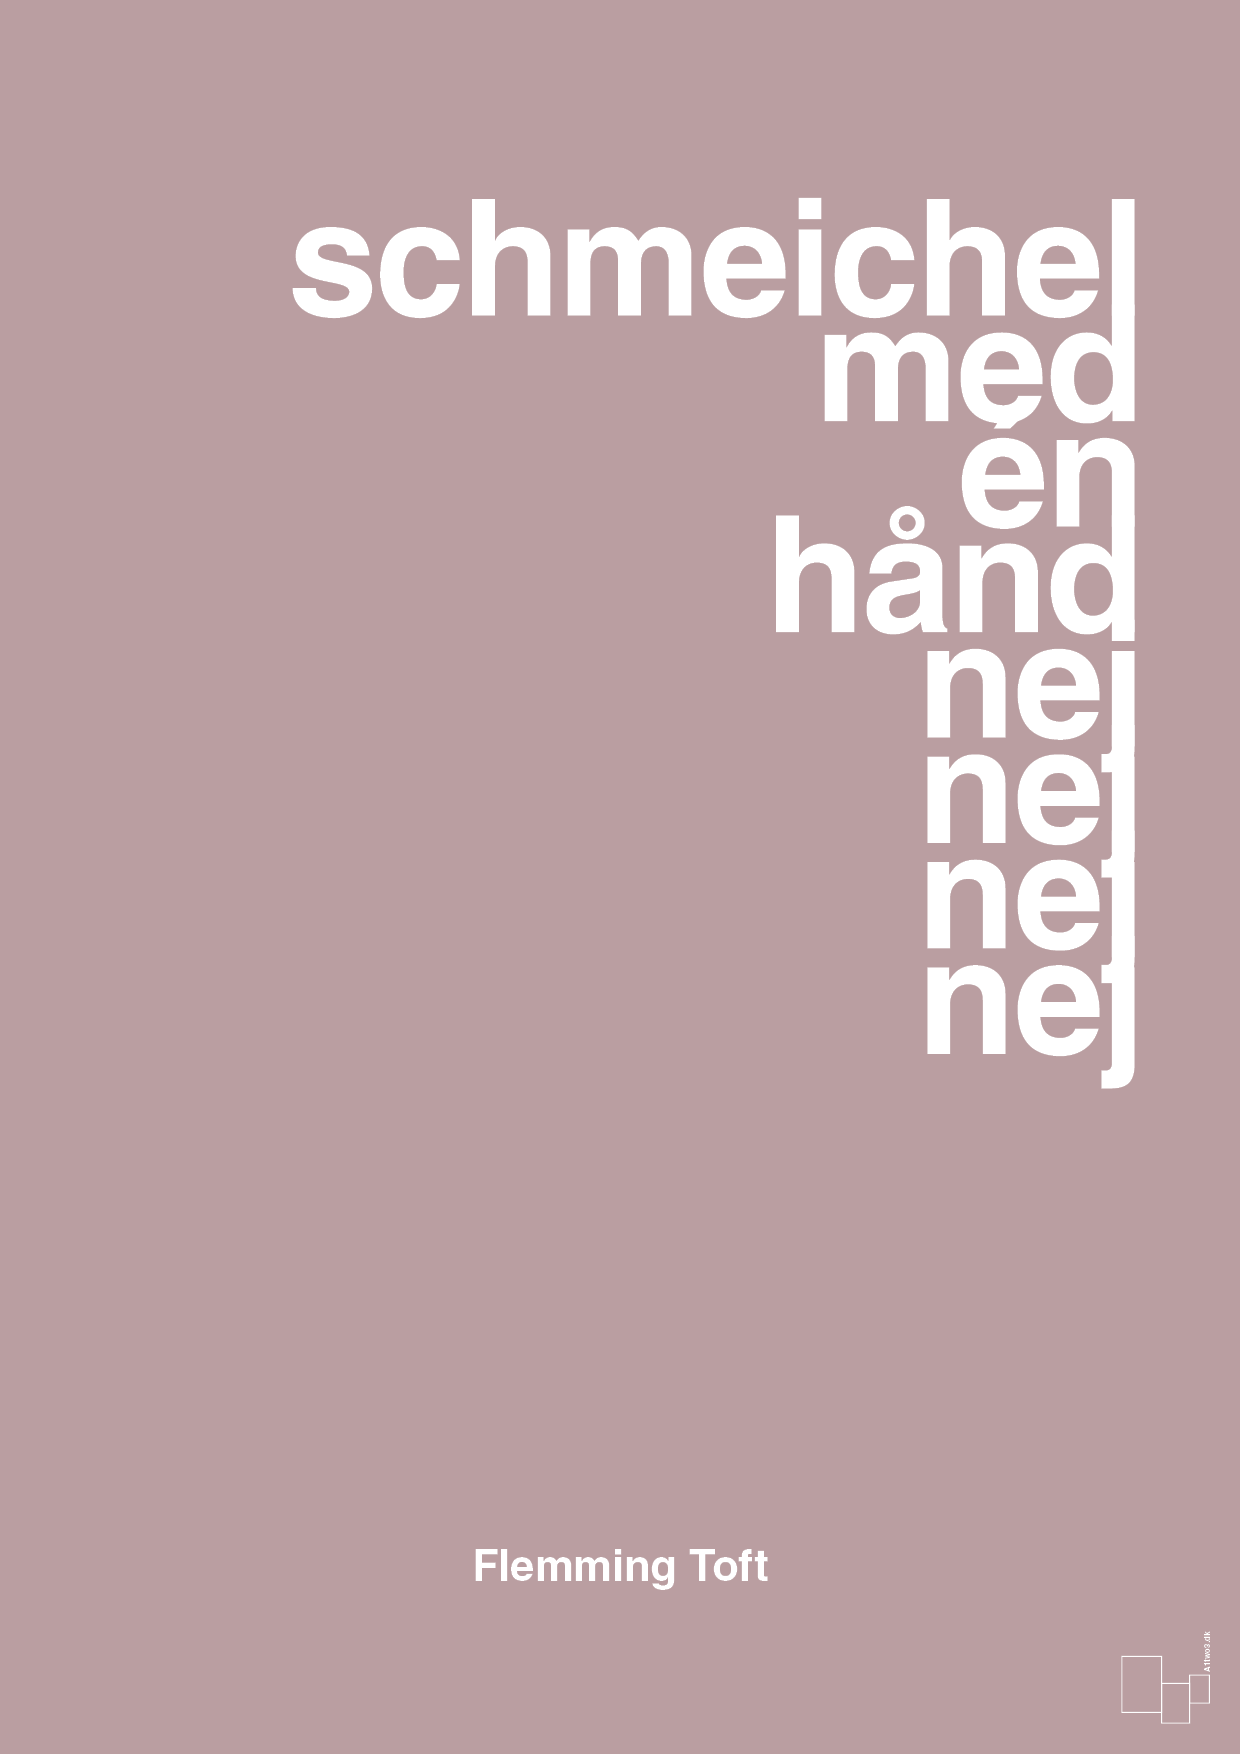 schmeichel med én hånd nej nej nej nej - Plakat med Citater i Light Rose